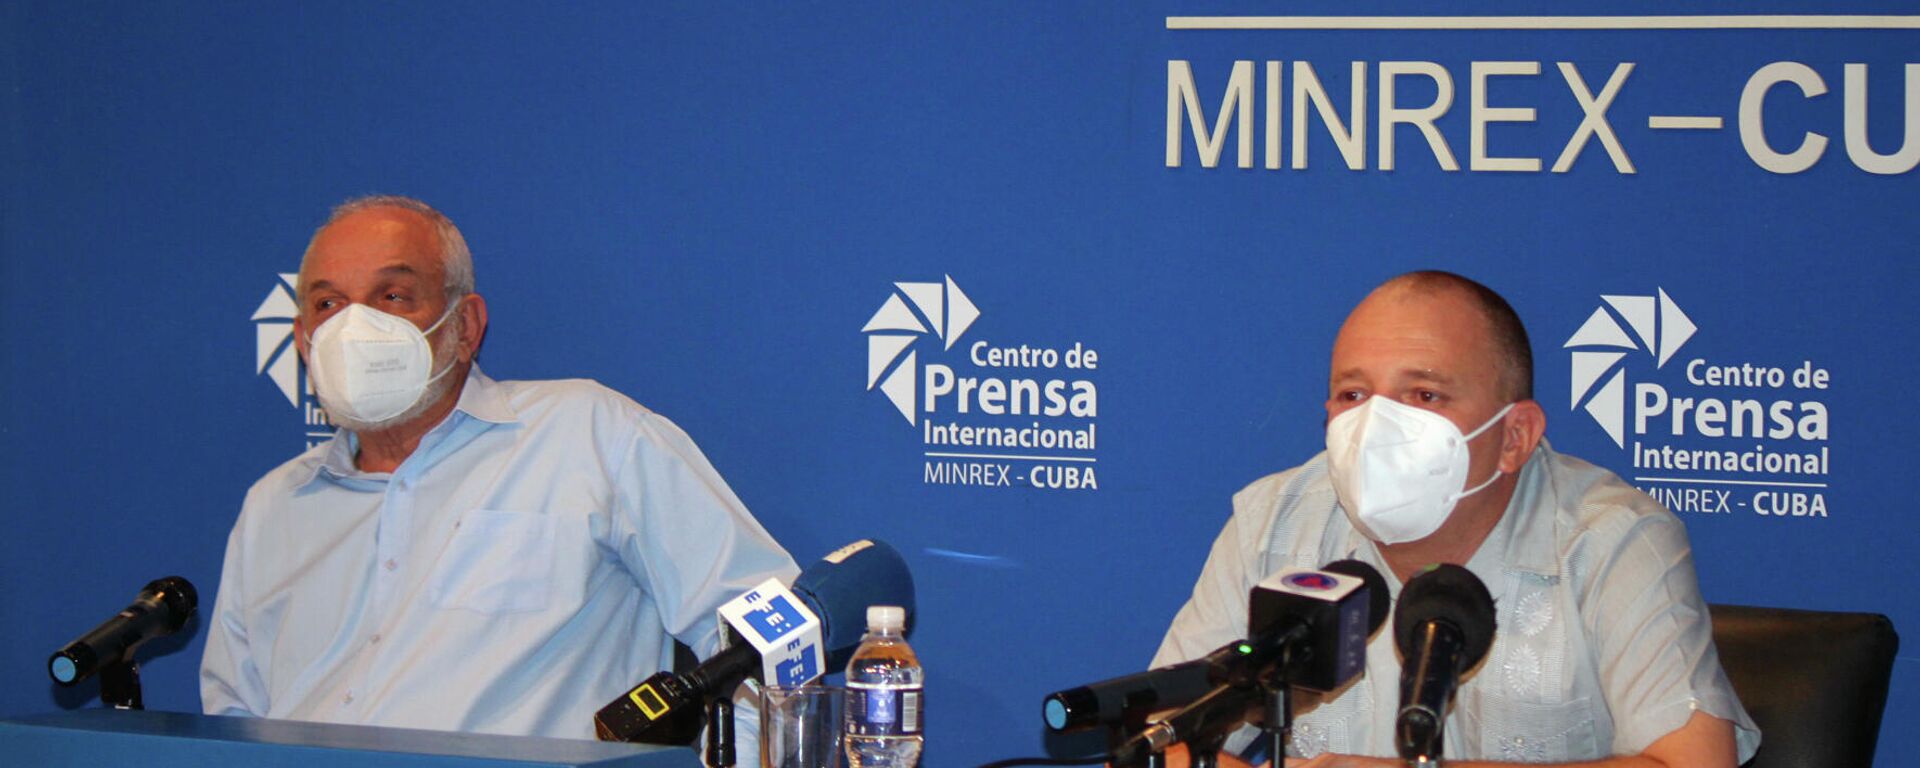 Humberto Fabián Suárez y Onelio Castillo, miembros del grupo de trabajo para la creación del Instituto de Información y Comunicación Social, de Cuba - Sputnik Mundo, 1920, 26.08.2021